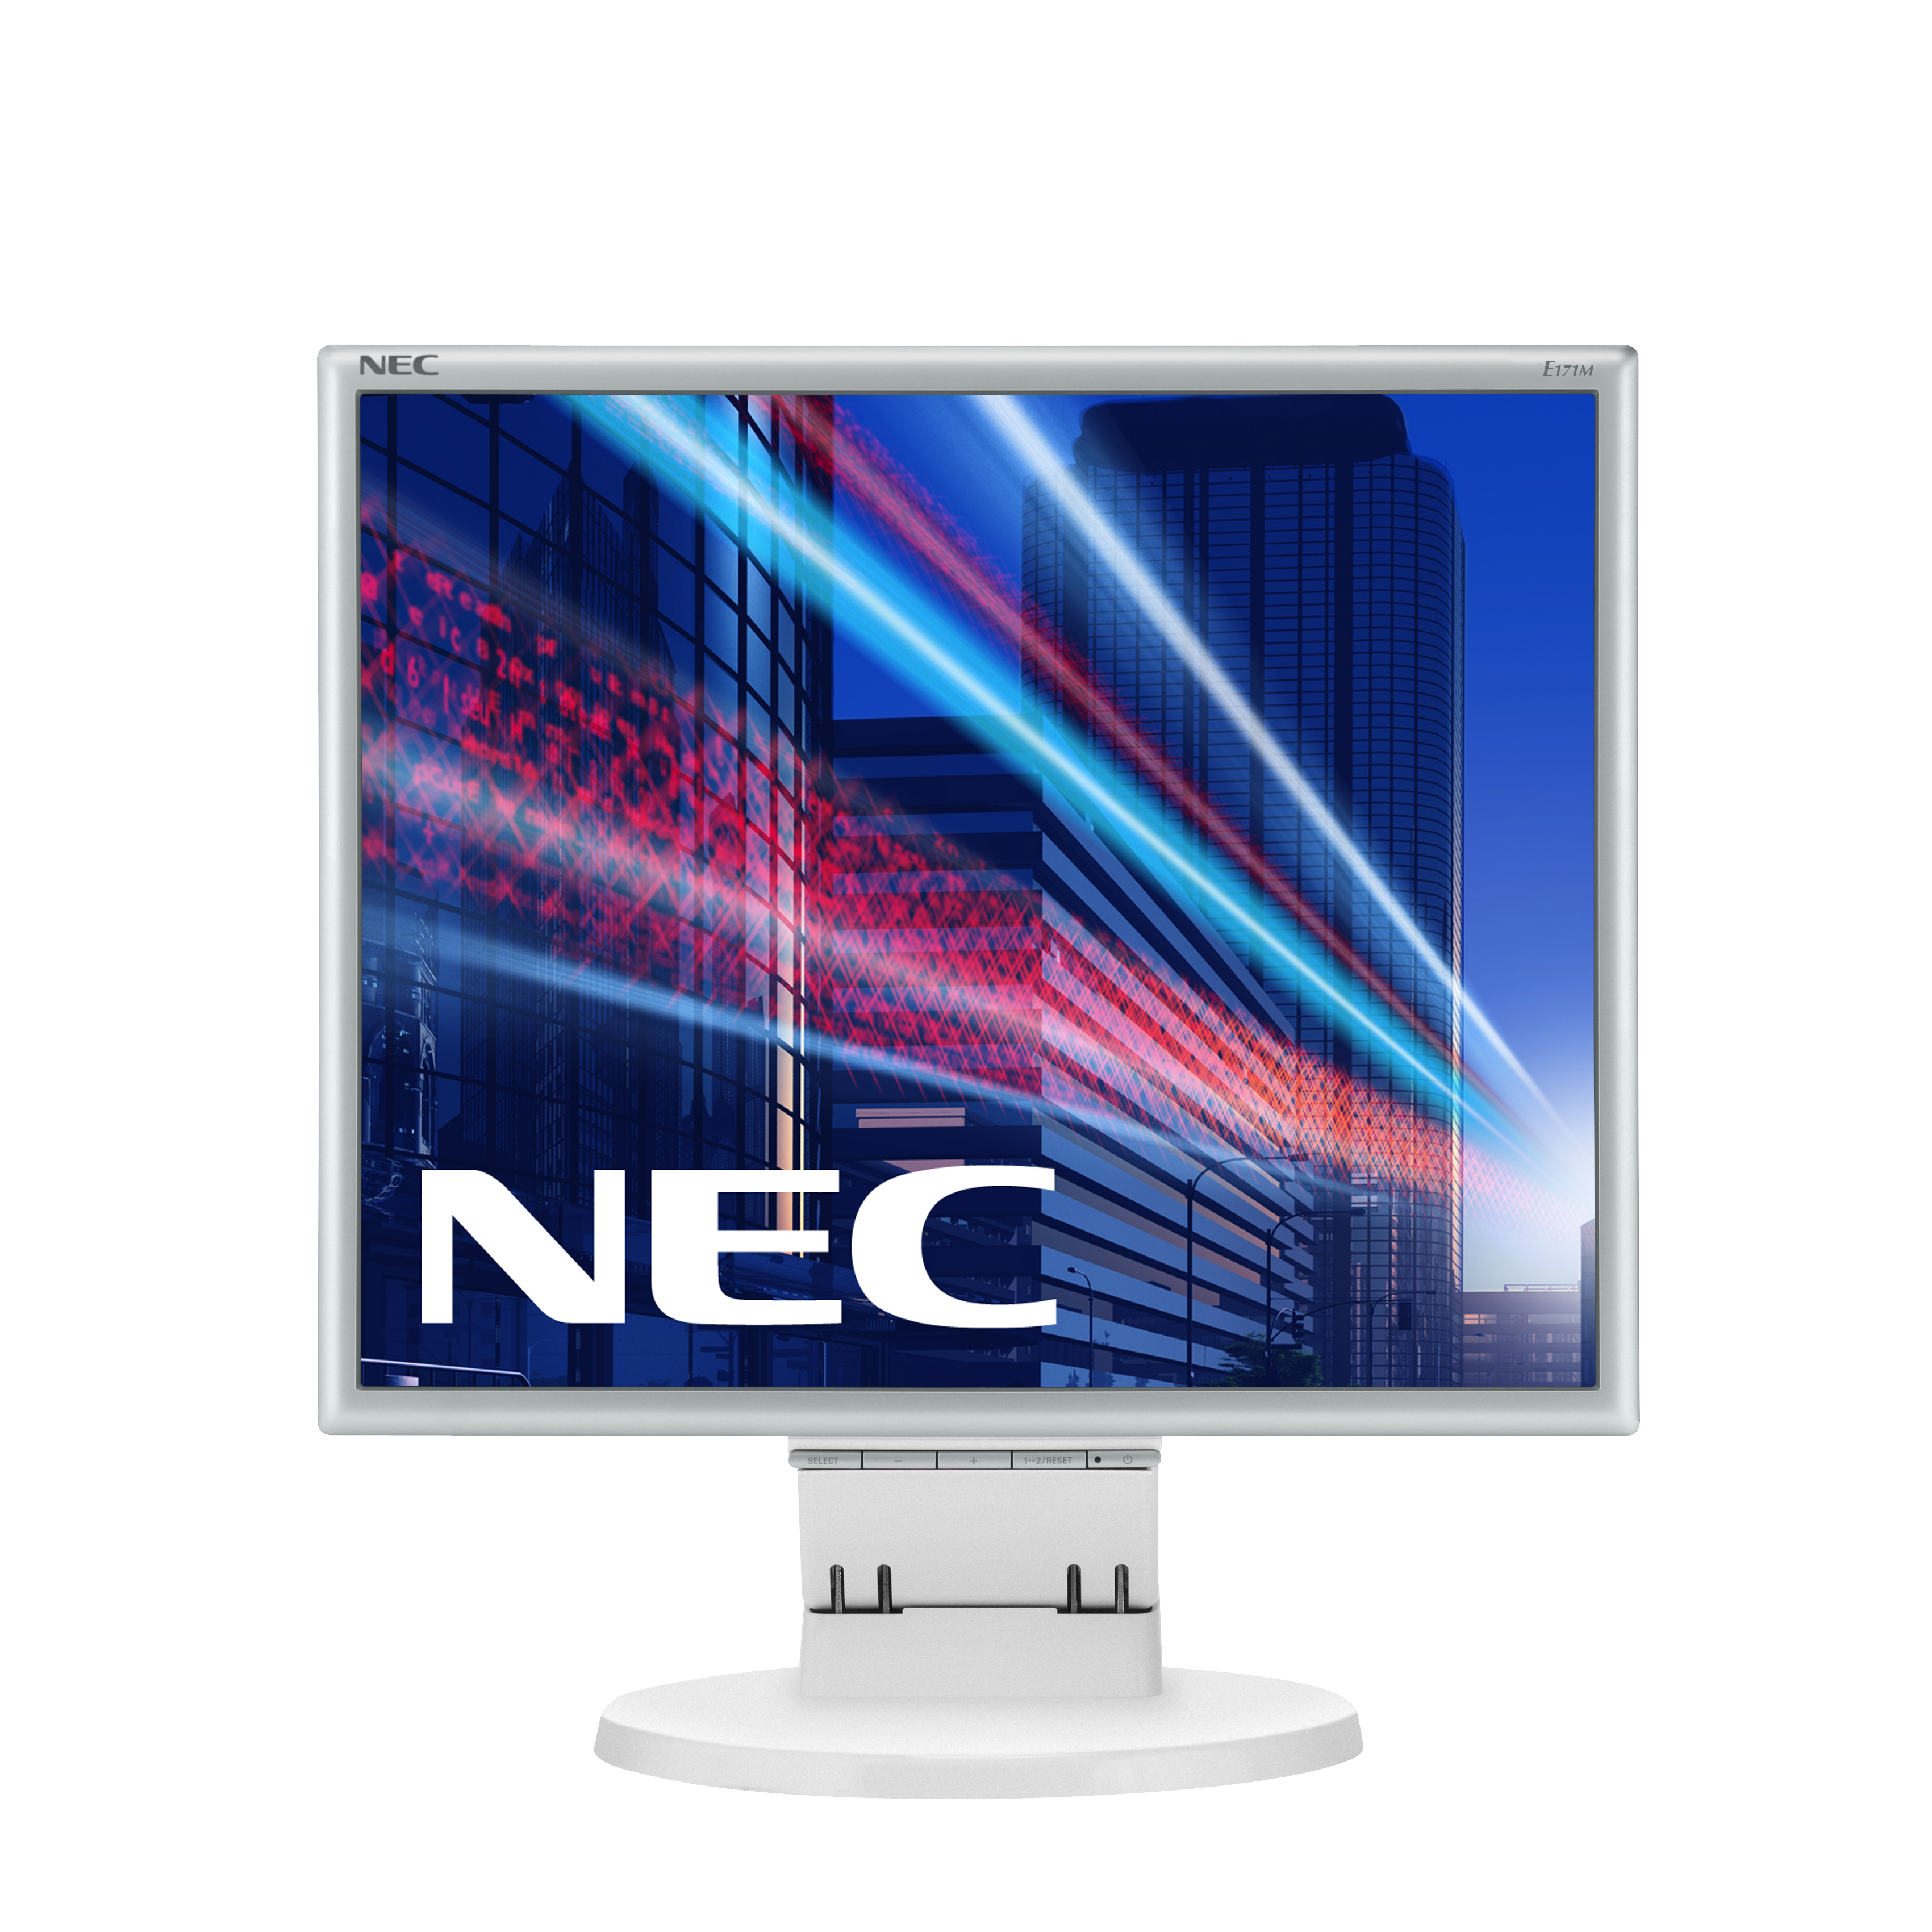 NEC E171M white 17 INCH LCD TFT